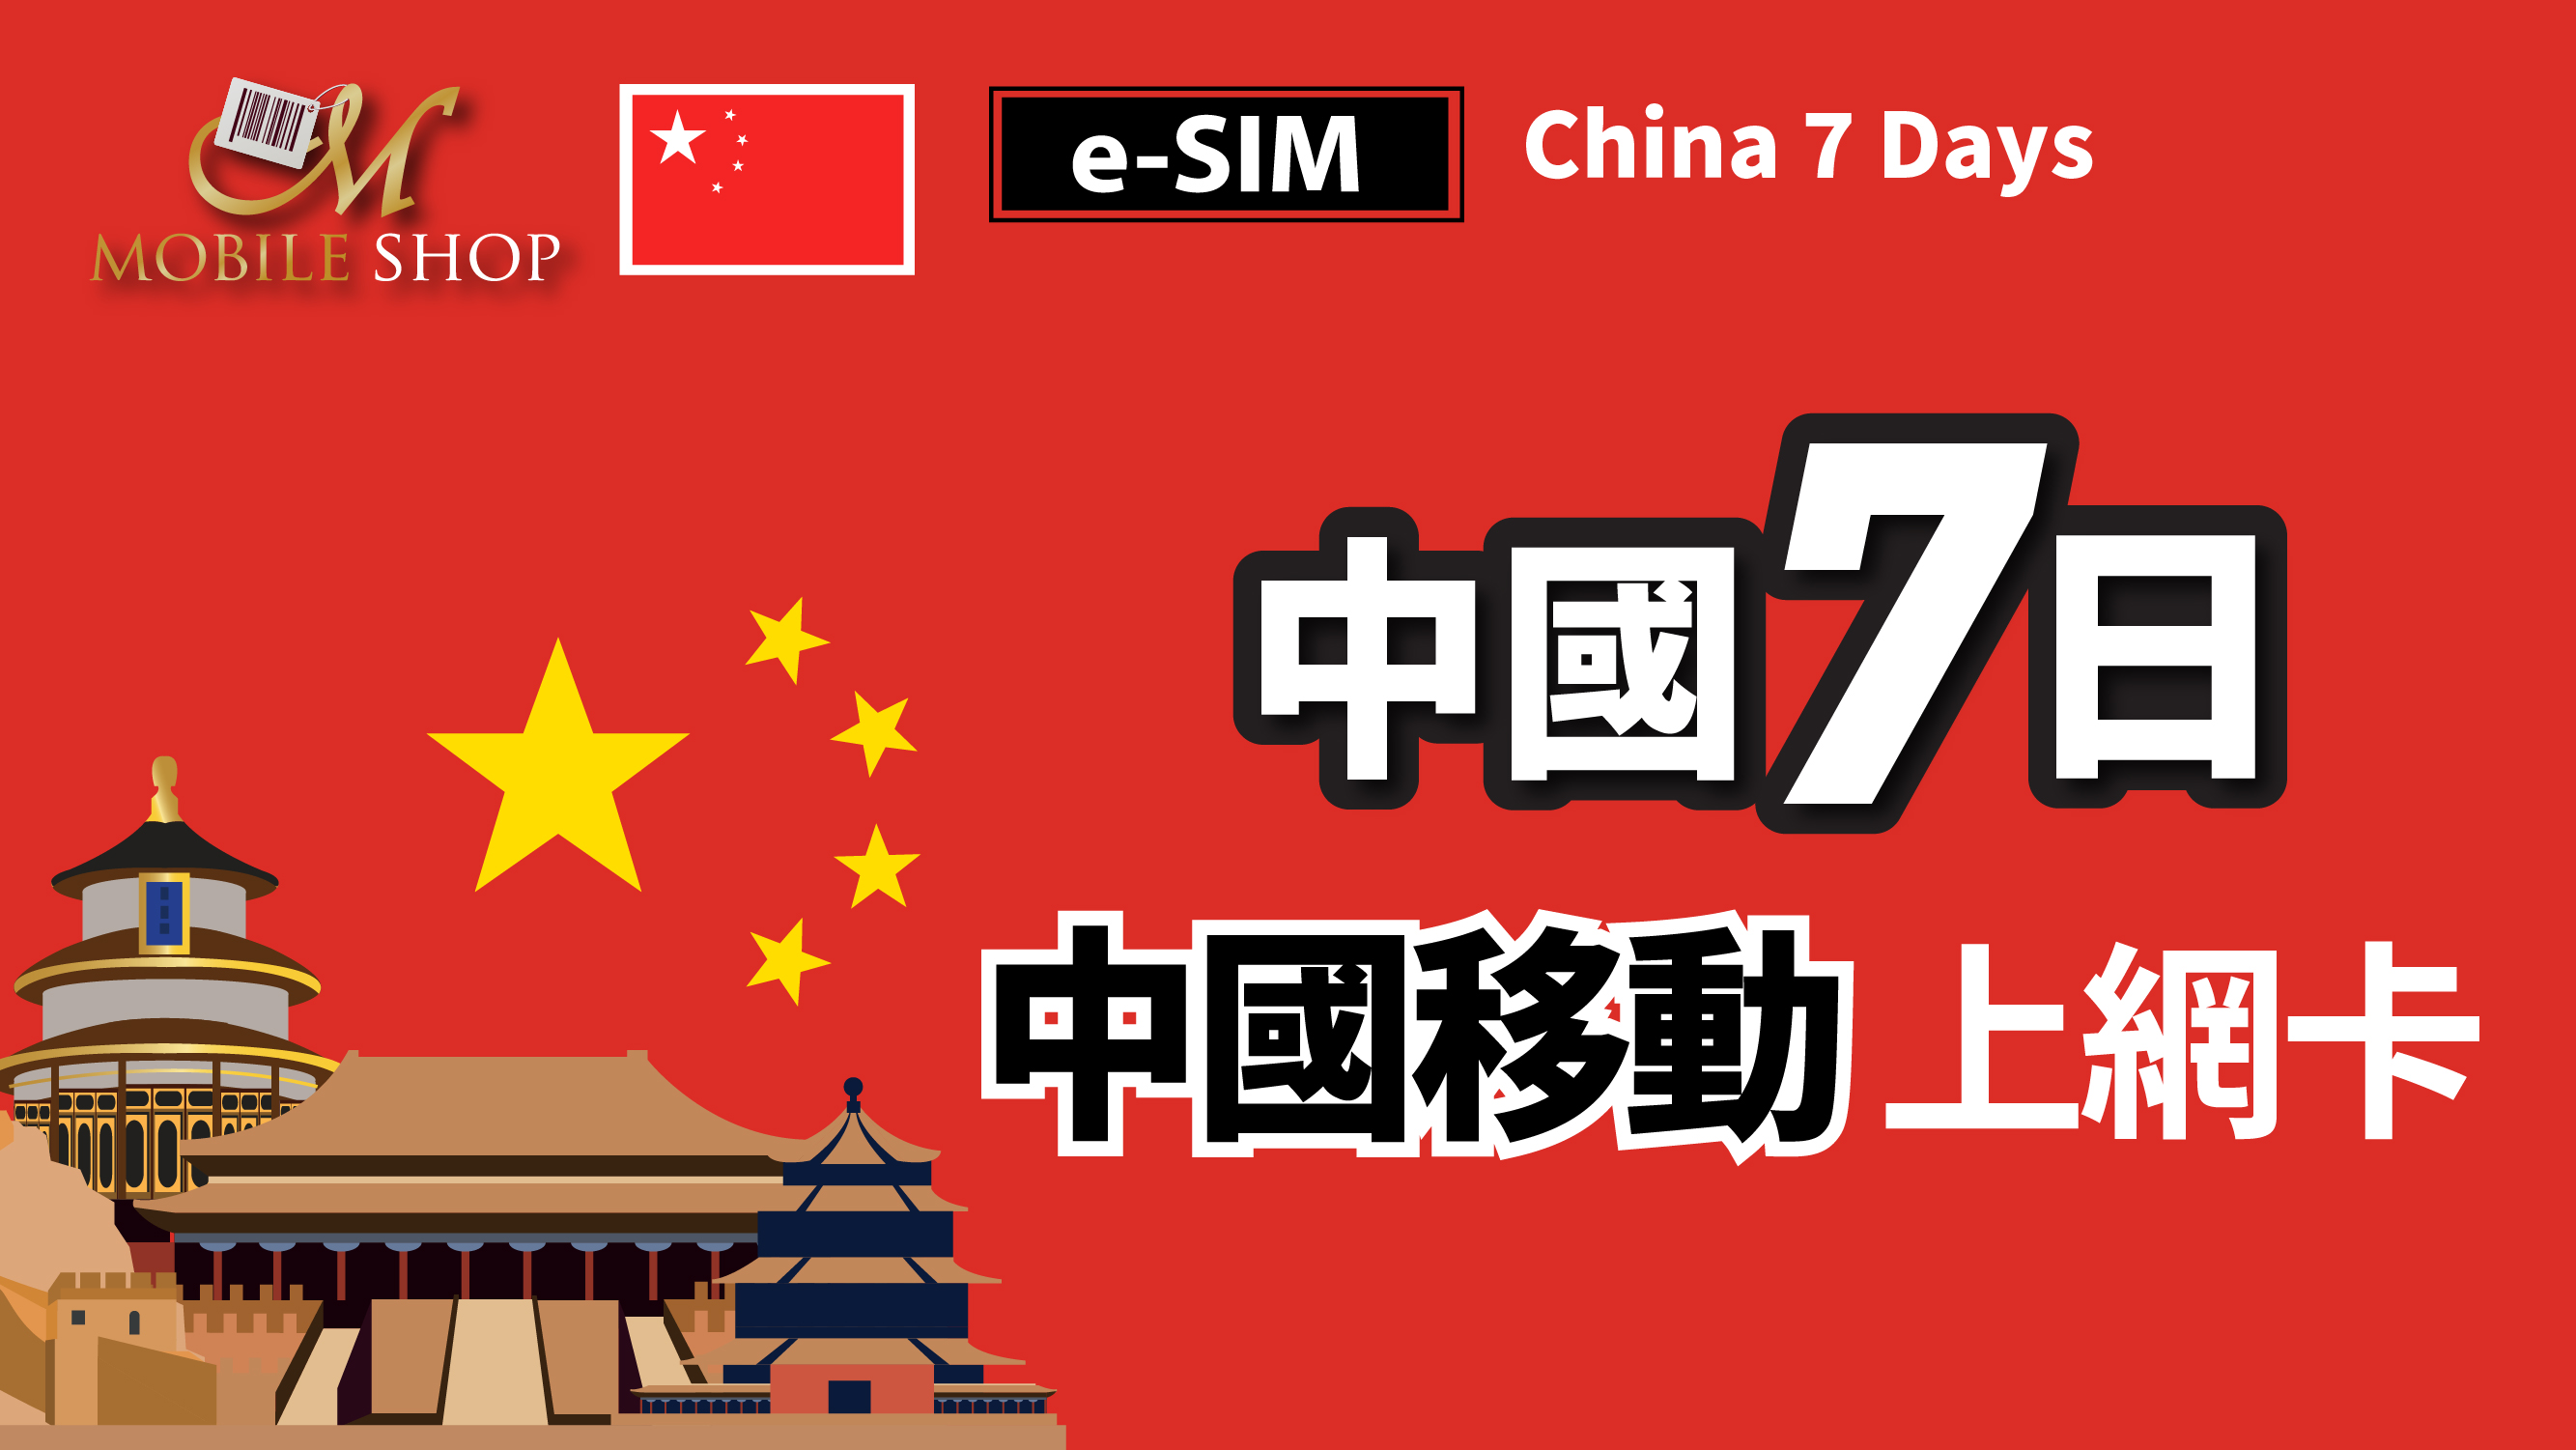 eSIM / China 7days